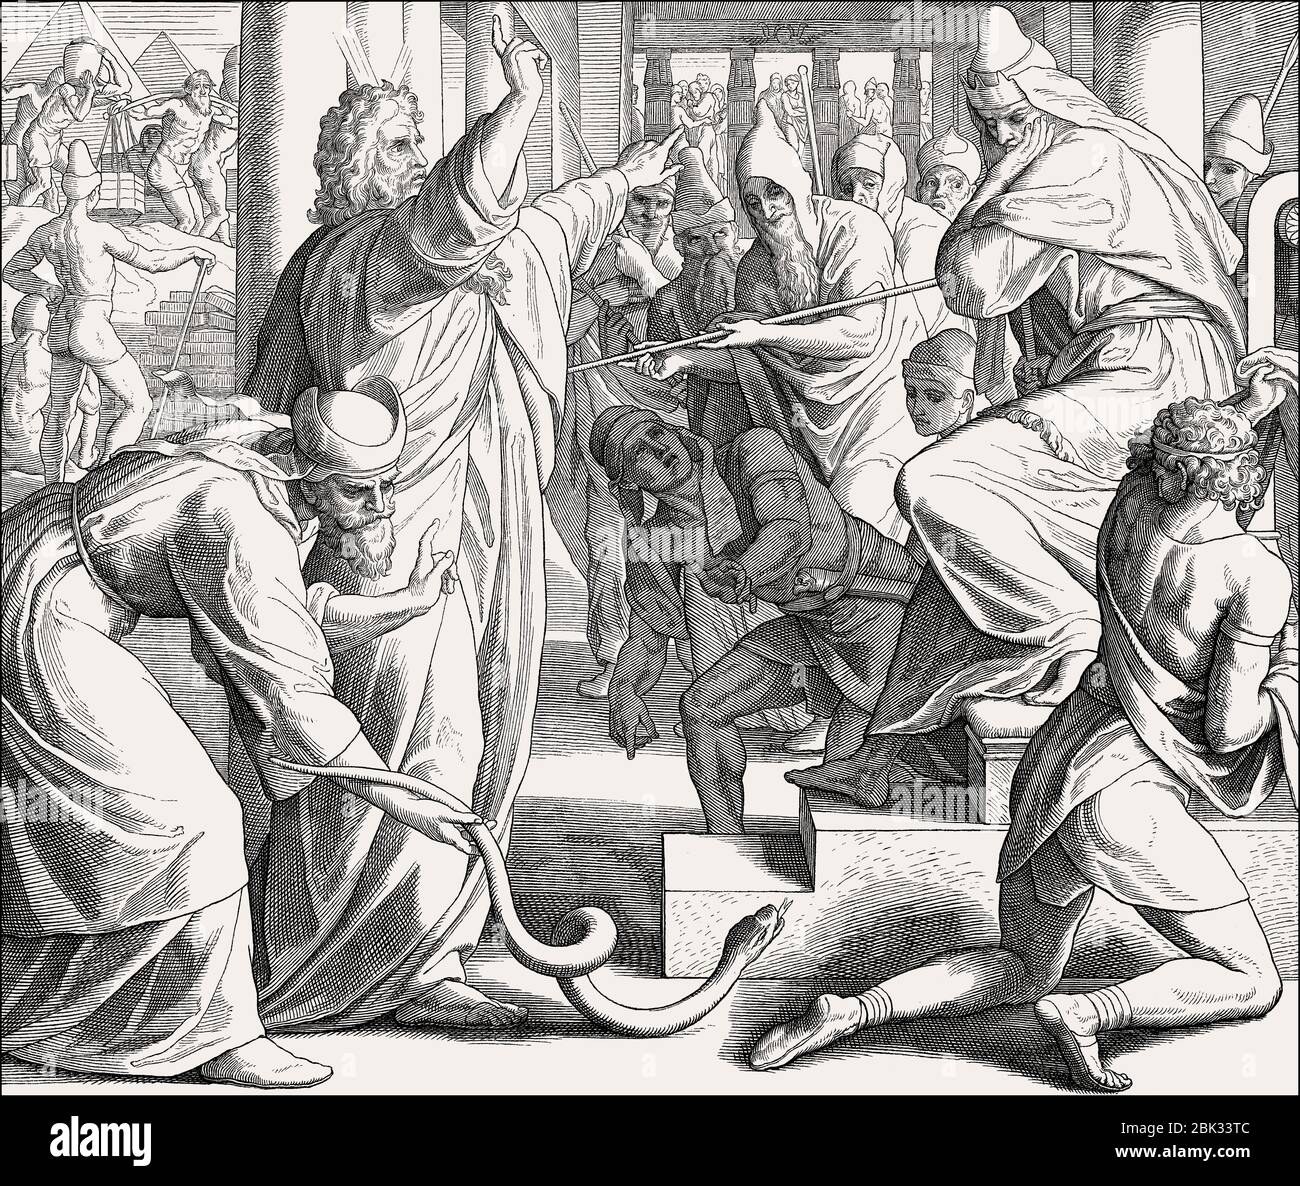 Moïse et Aaron apparaissent devant Pharaon, le personnel de Snakes, ancien Testament, par Julius Schnorr von Carolsfeld, 1860 Banque D'Images